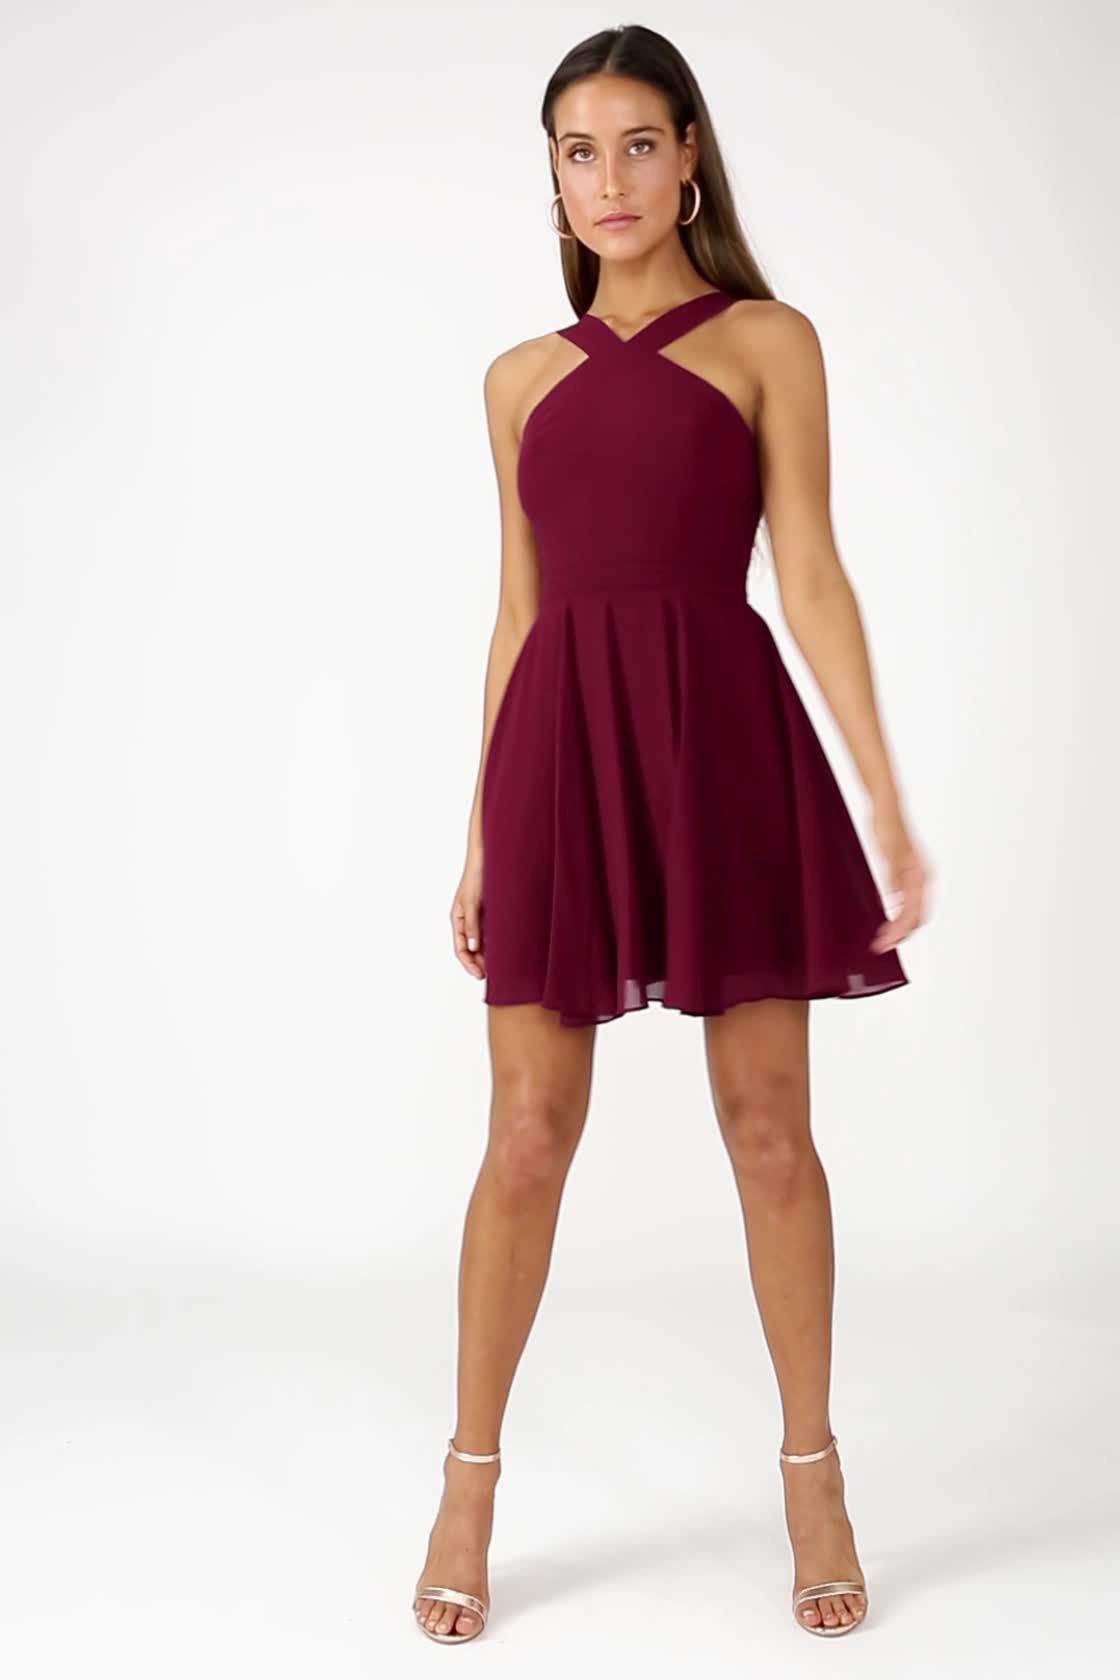 Lulus Prom Burgundy A-line Dress Size XS